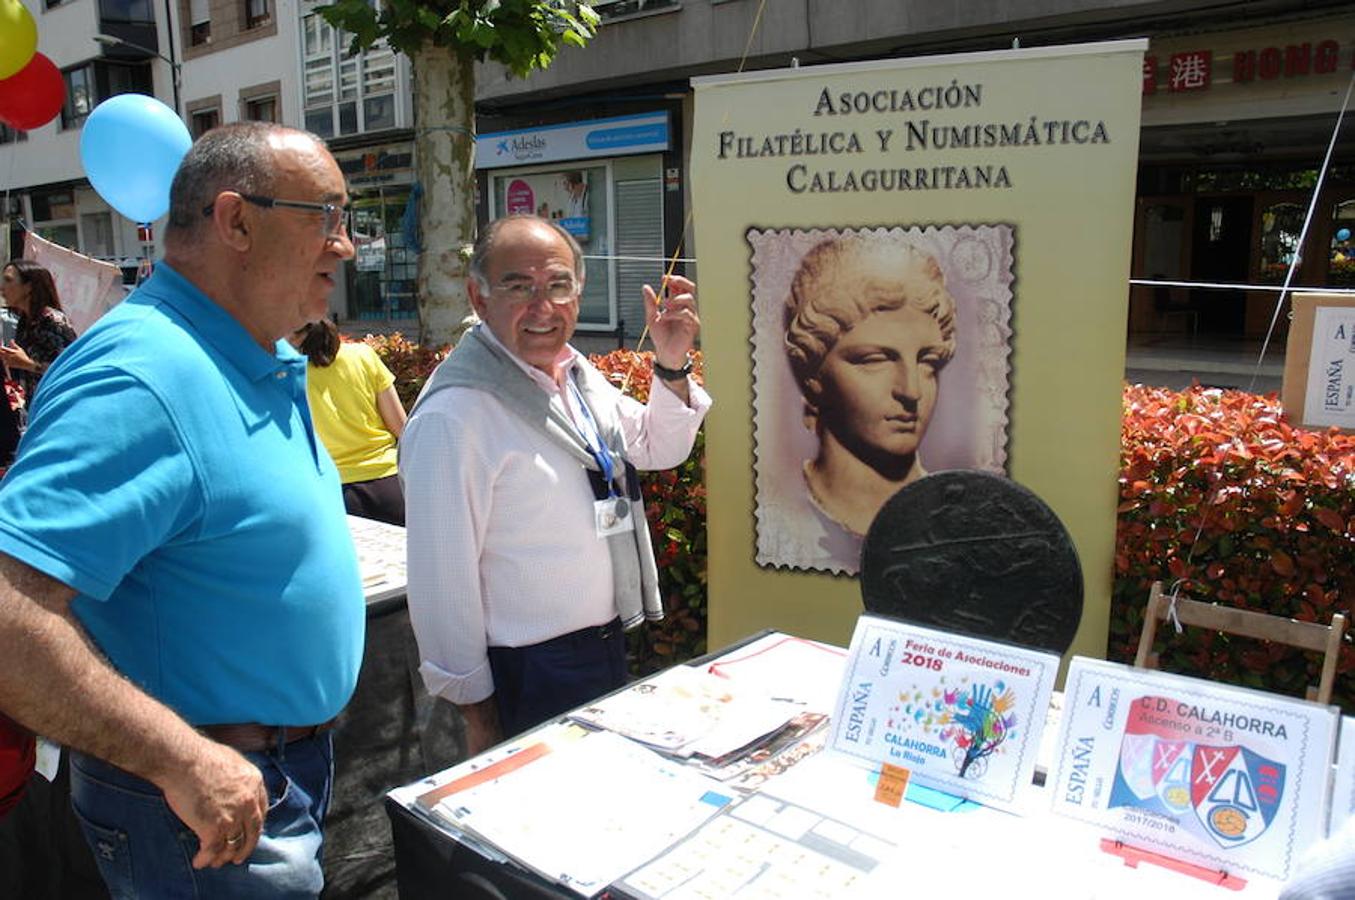 galería de imágenes correspondientes a la Feria de Asociaciones celebrada el sábado en Calahorra